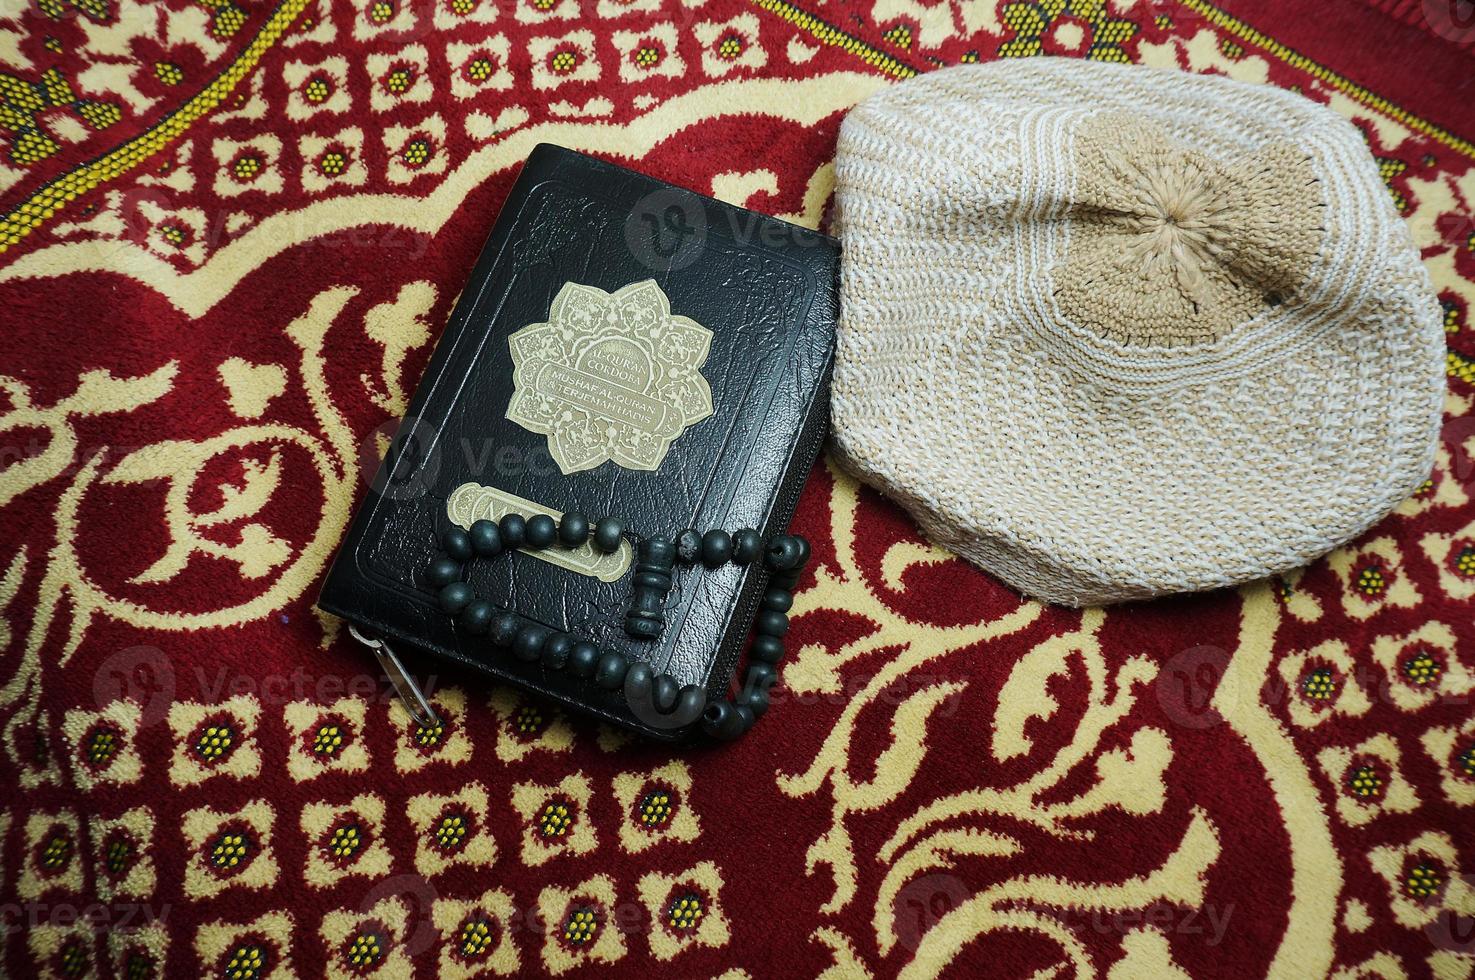 al quran avec l'indonésie se traduit sur un tapis de prière. le coran est un livre sacré islamique pour les musulmans. photo